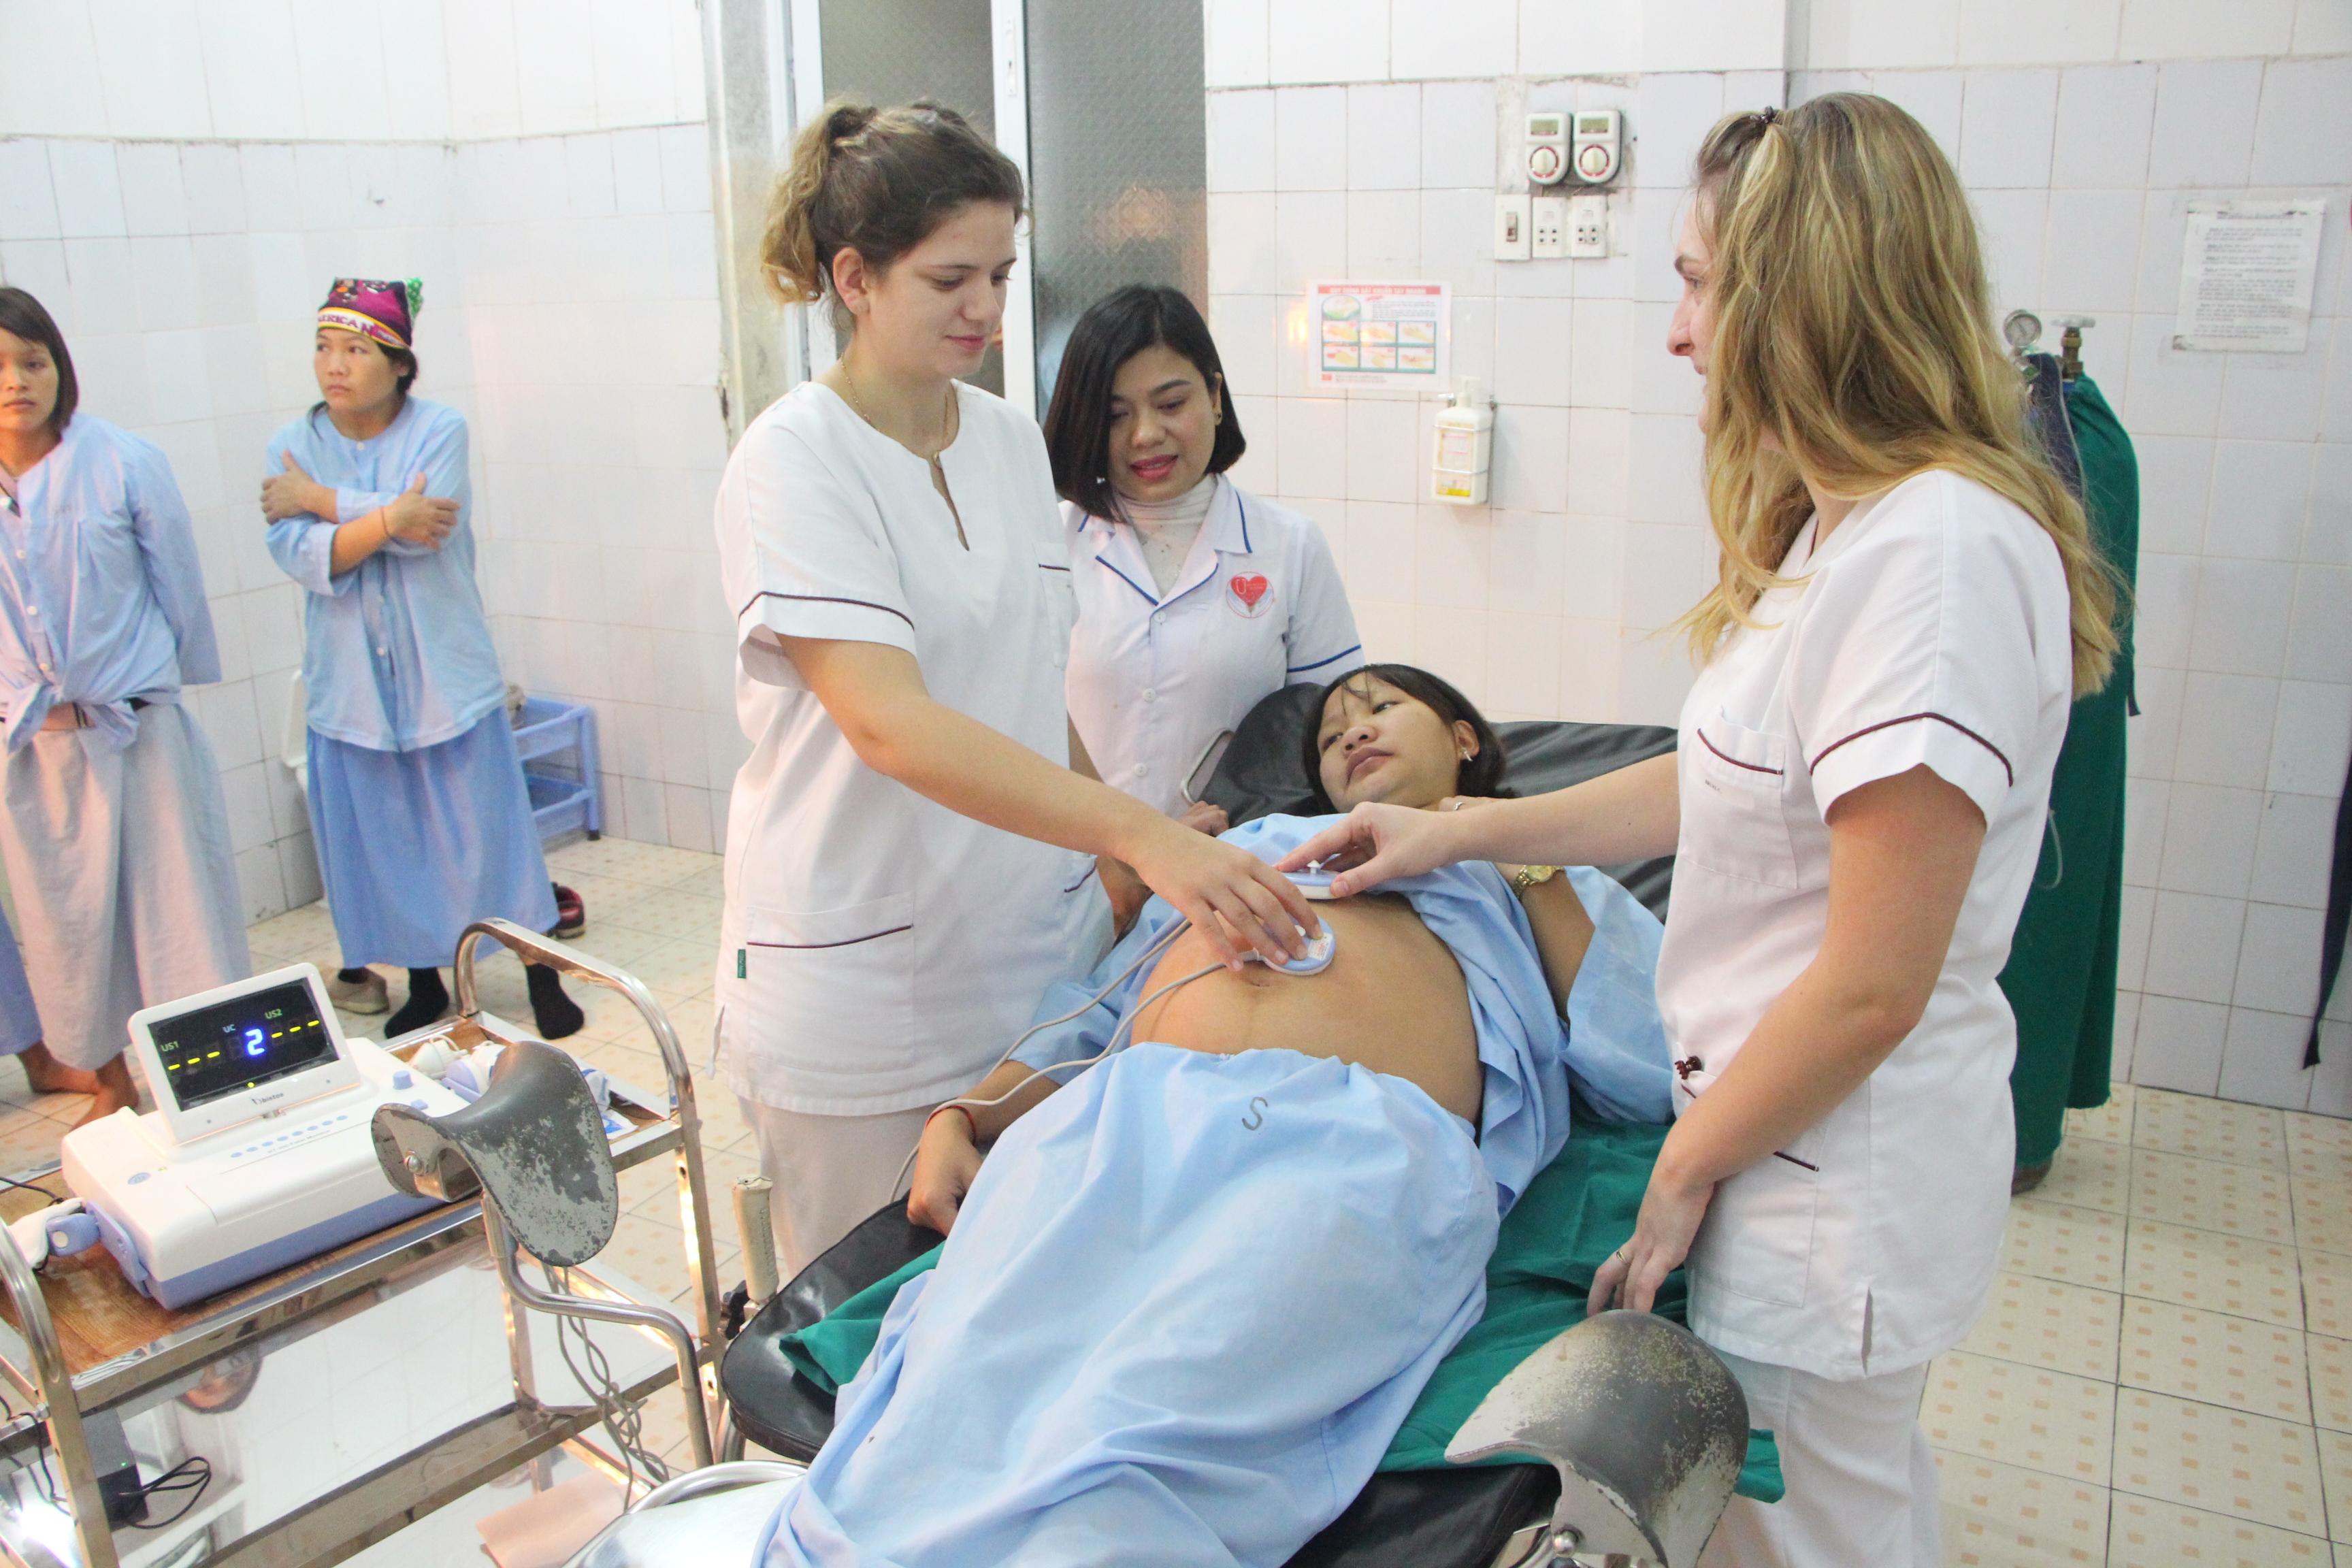 Hiệp hội hợp tác vì trẻ em Việt Nam tổ chức hoạt động trao đổi, chia sẻ kiến thức chuyên sản, nhi tại bệnh viện đa khoa huyện Vị Xuyên